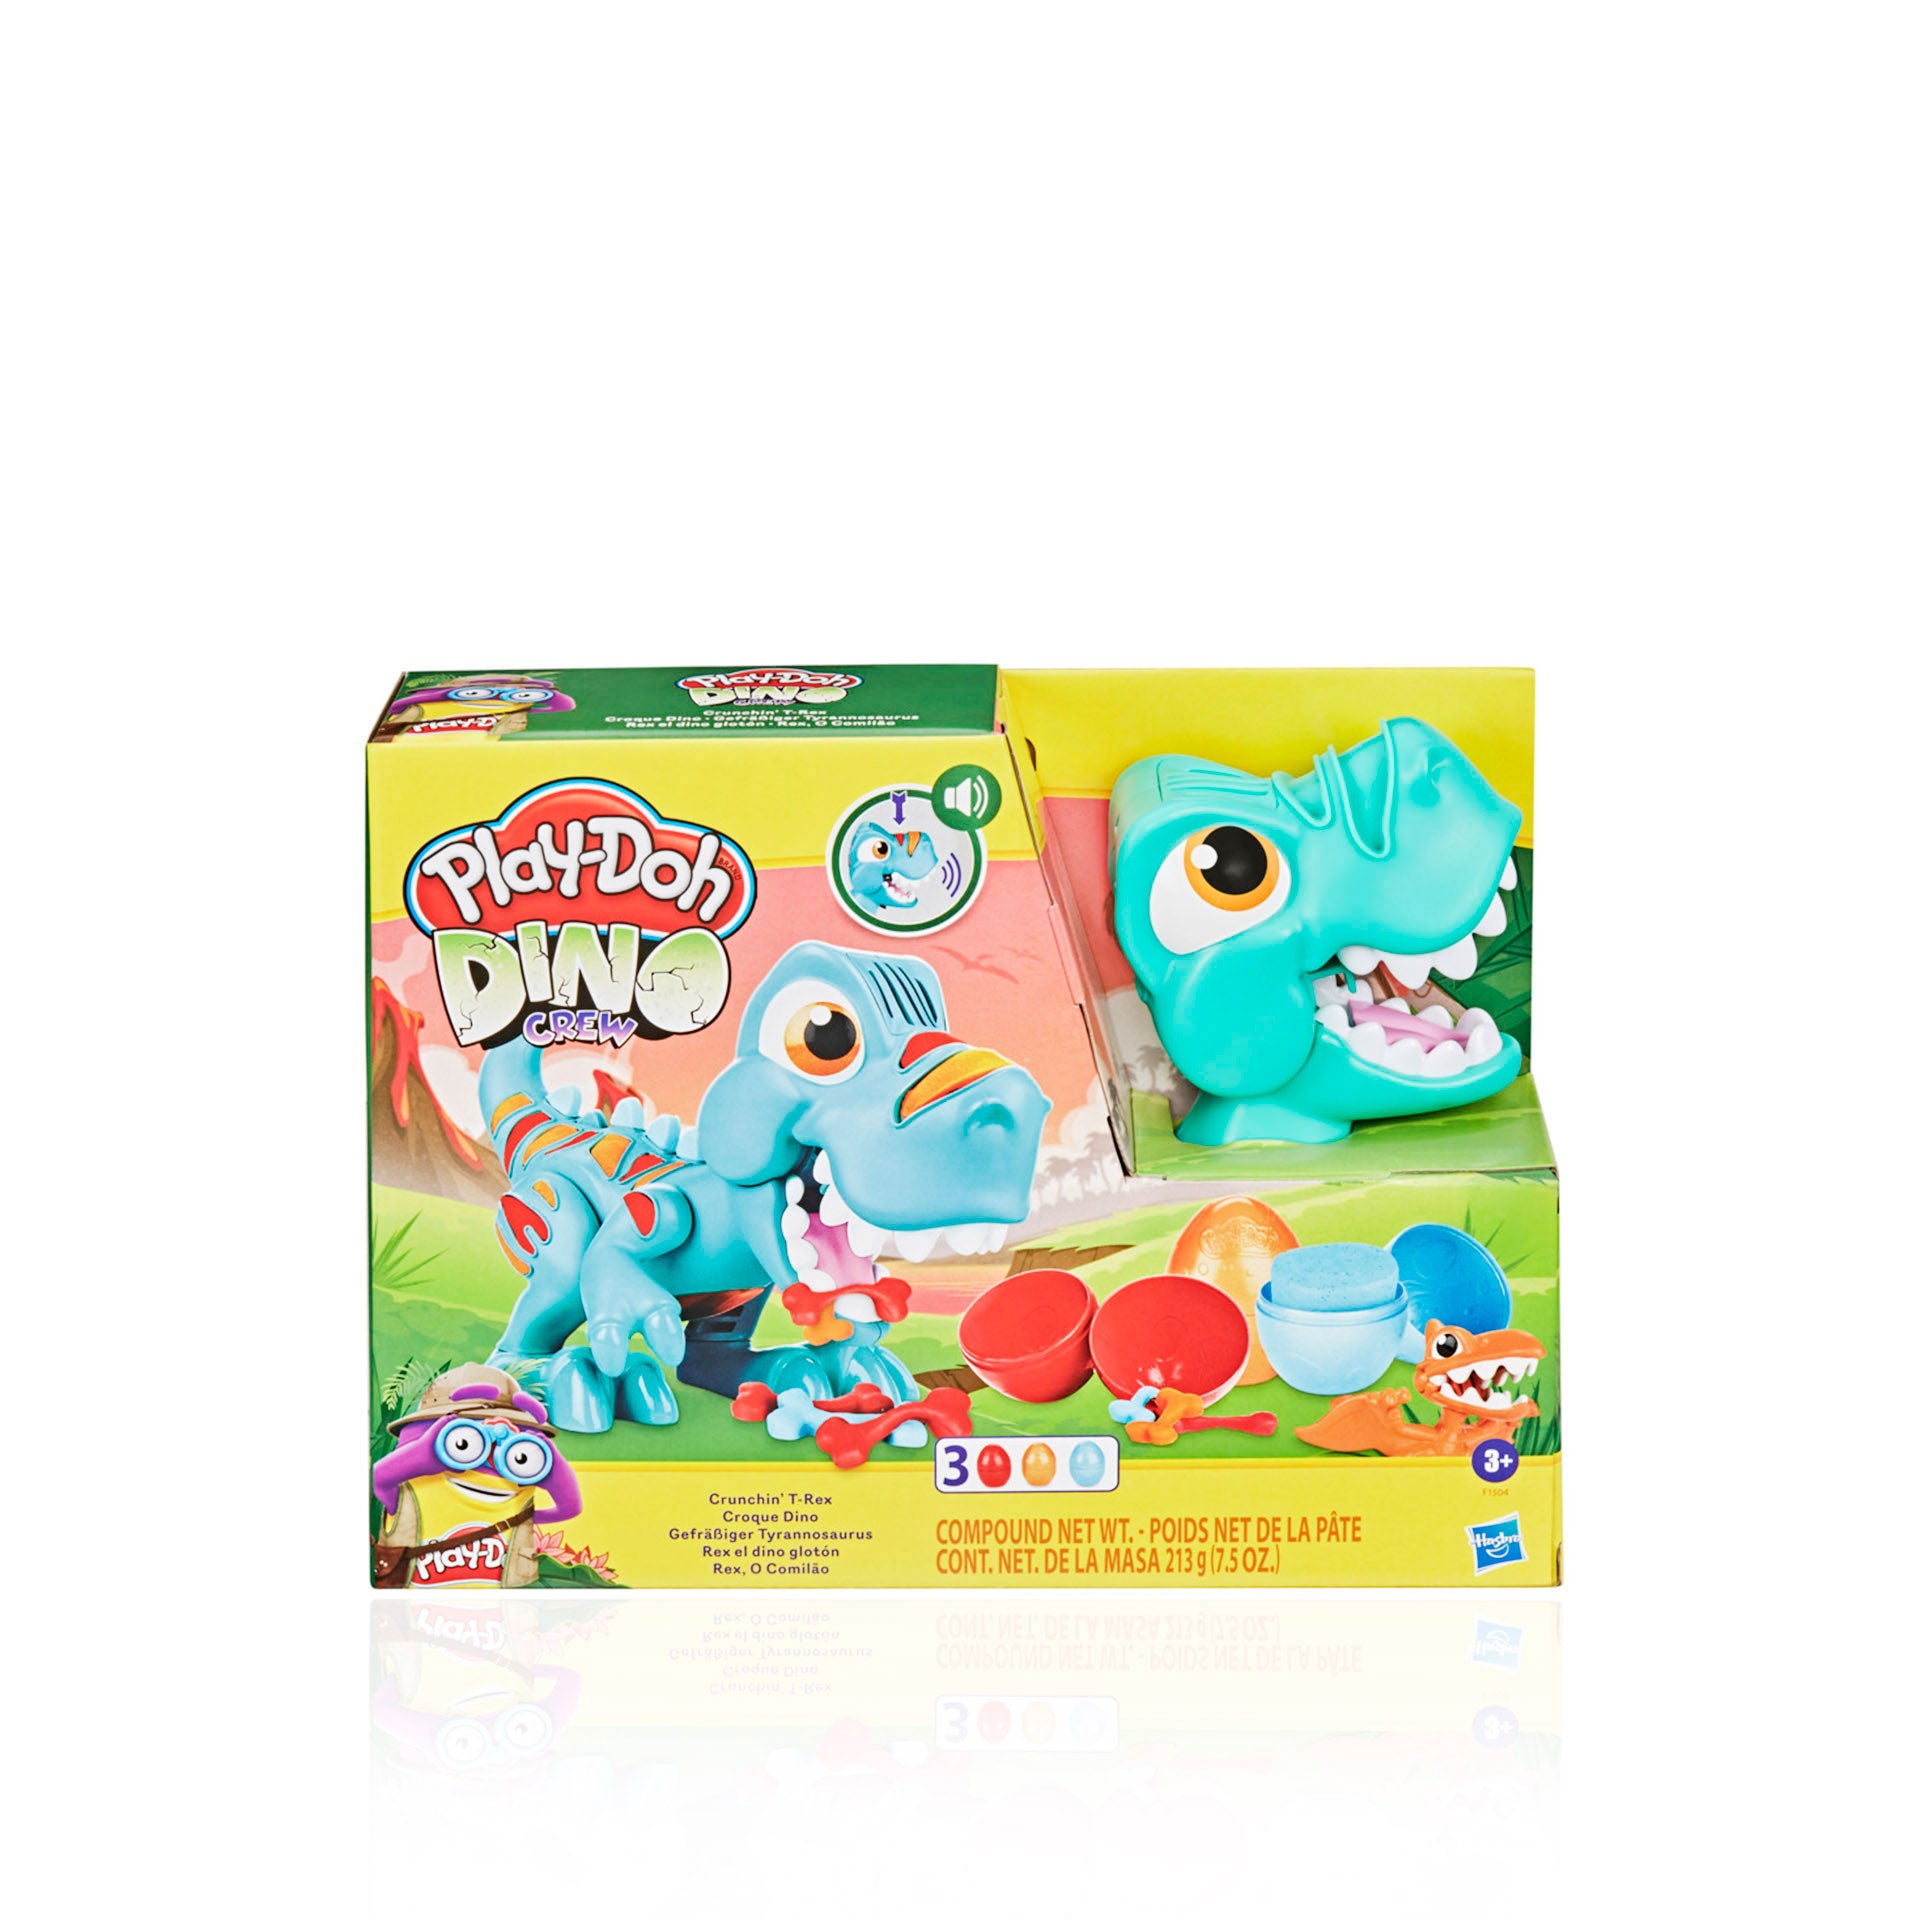 Play-Doh Plasticina Rex, O Comilão